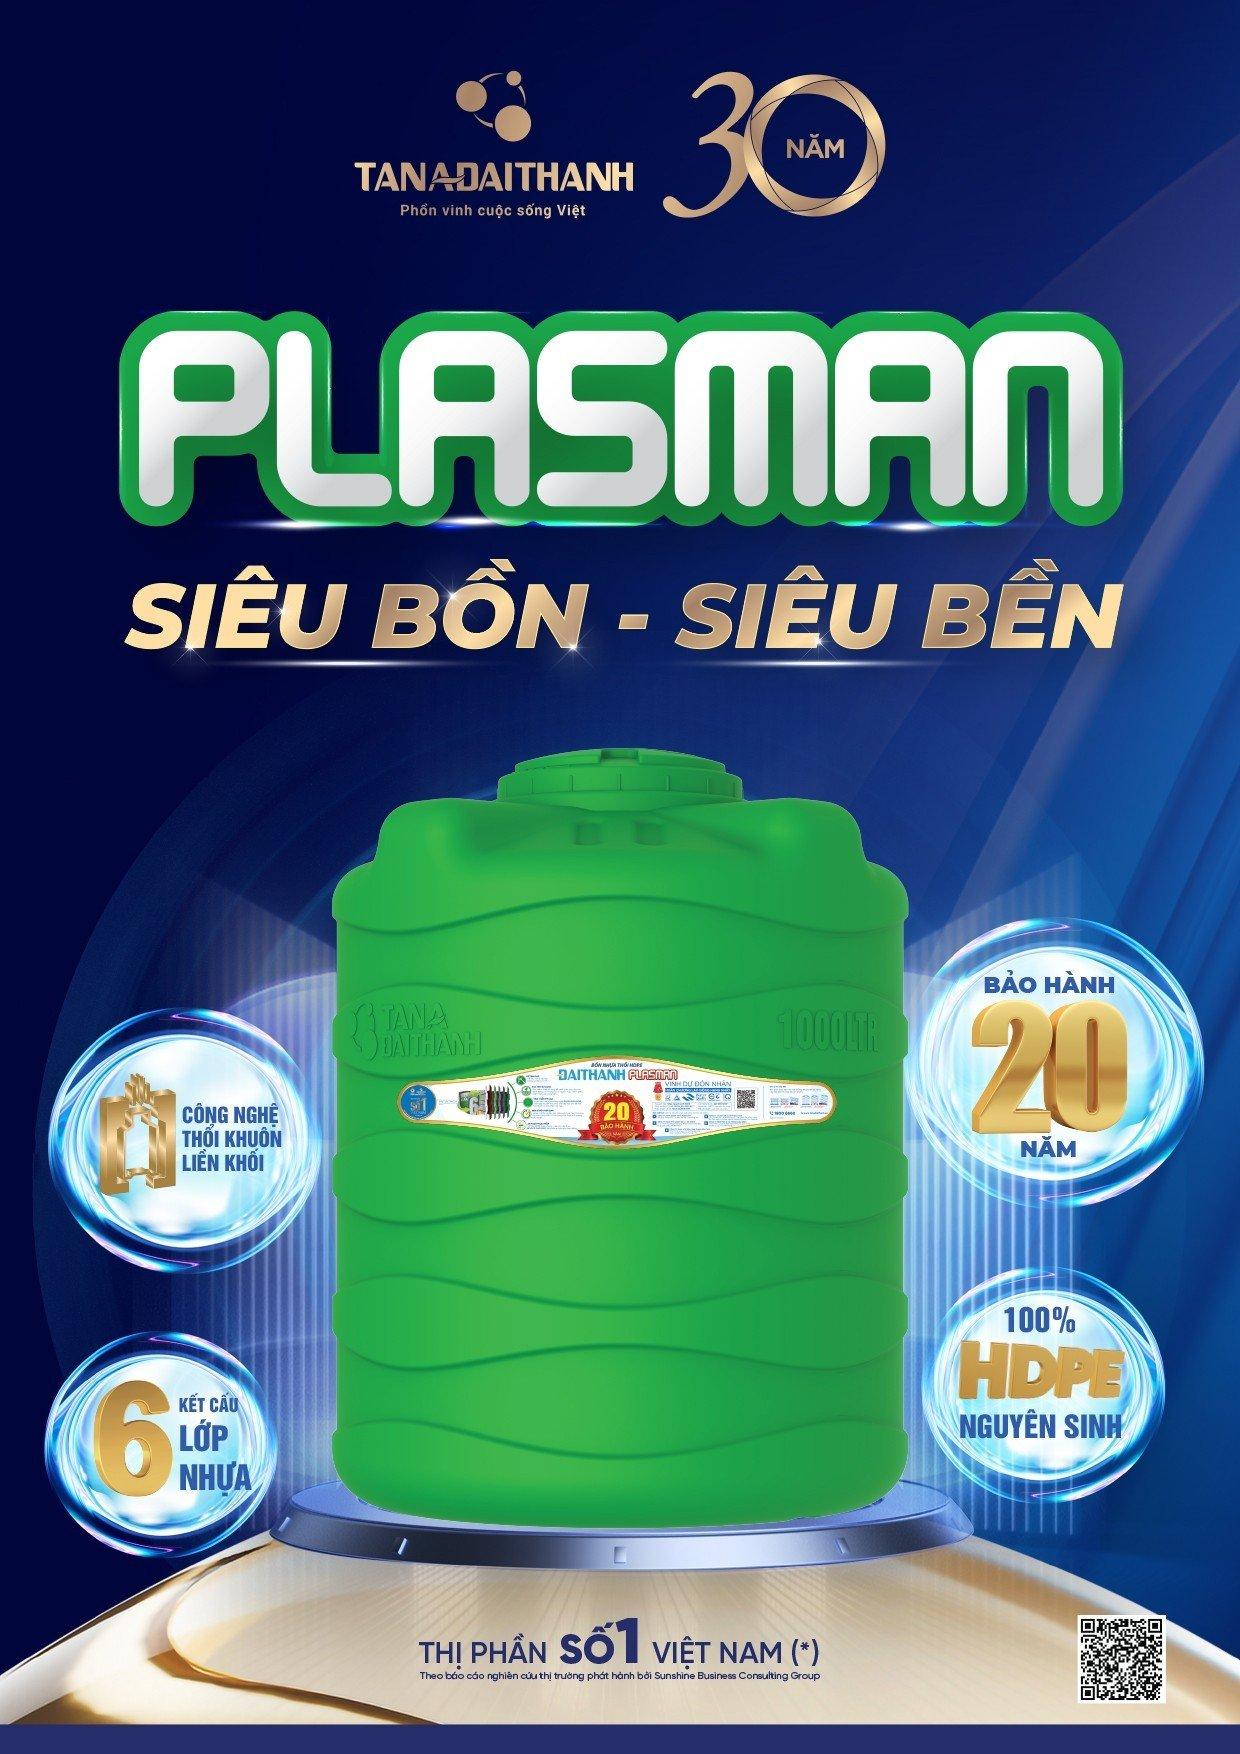 “Thử thách độ bền cùng siêu bồn Plasman” gây ấn tượng đặc biệt - Ảnh 7.